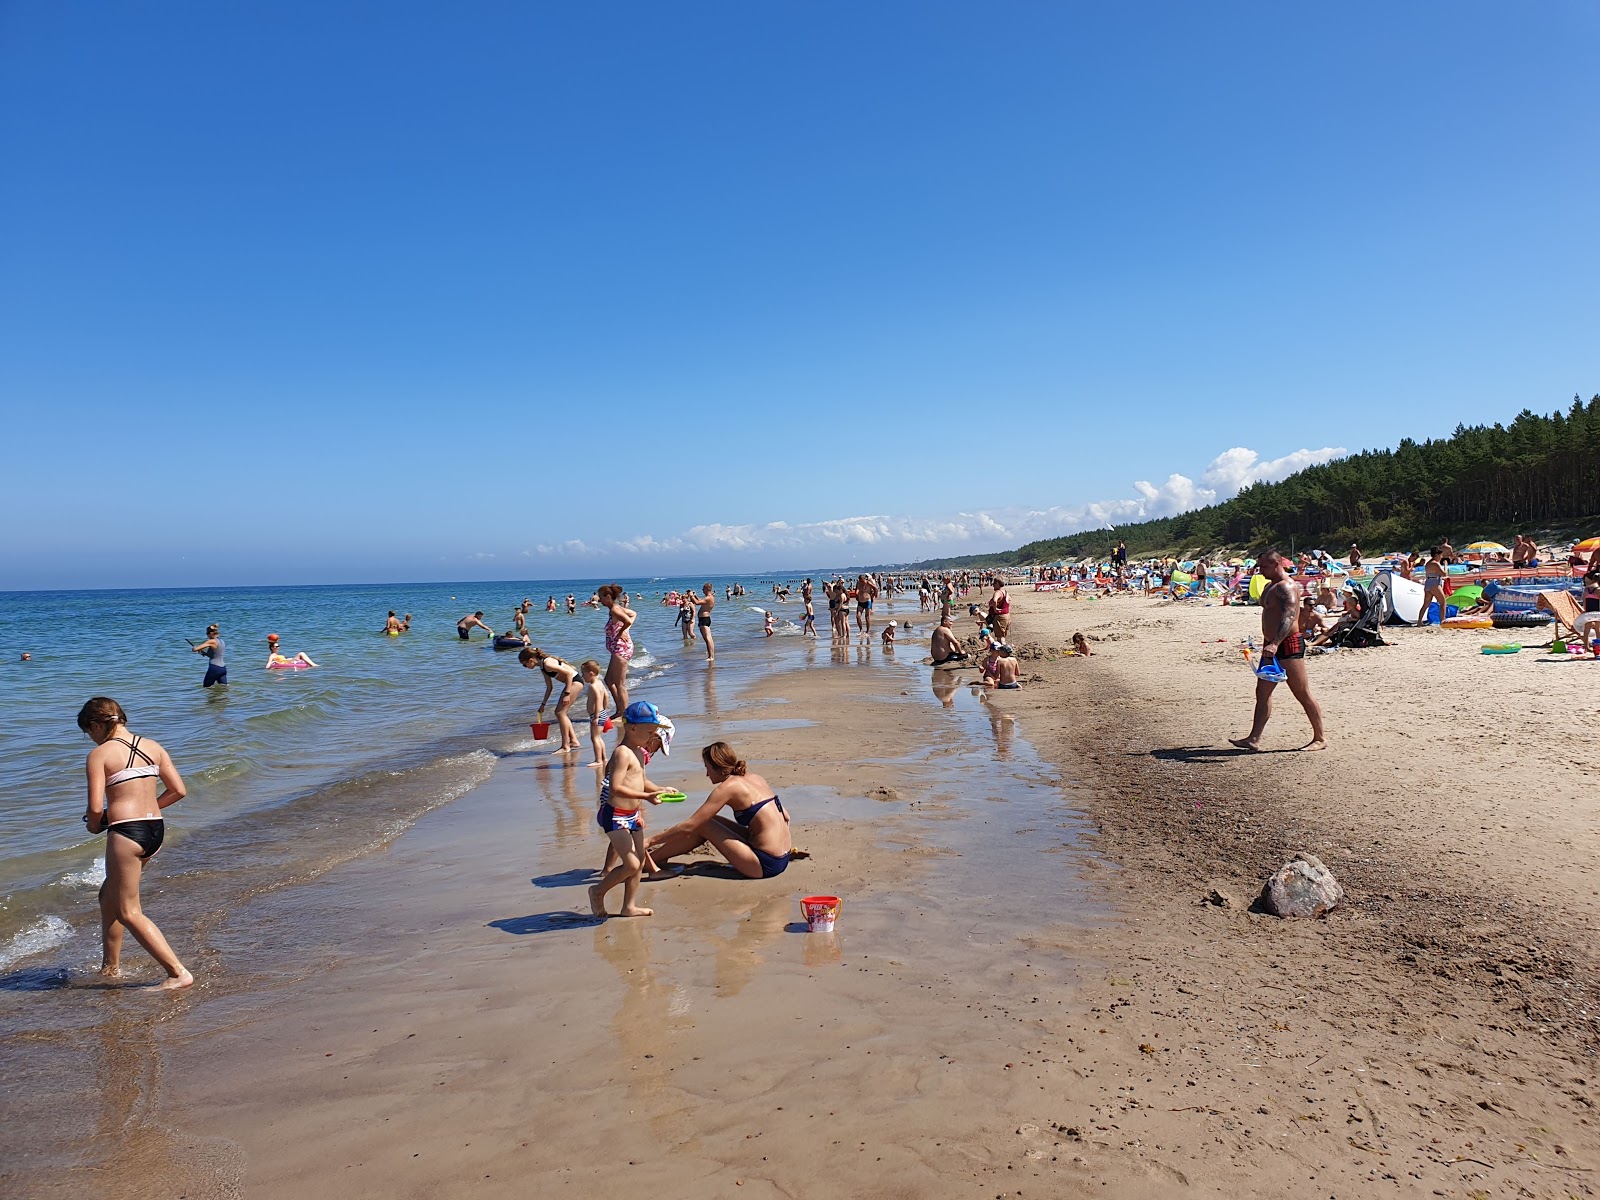 Fotografie cu Mielenko beach zonele de facilități